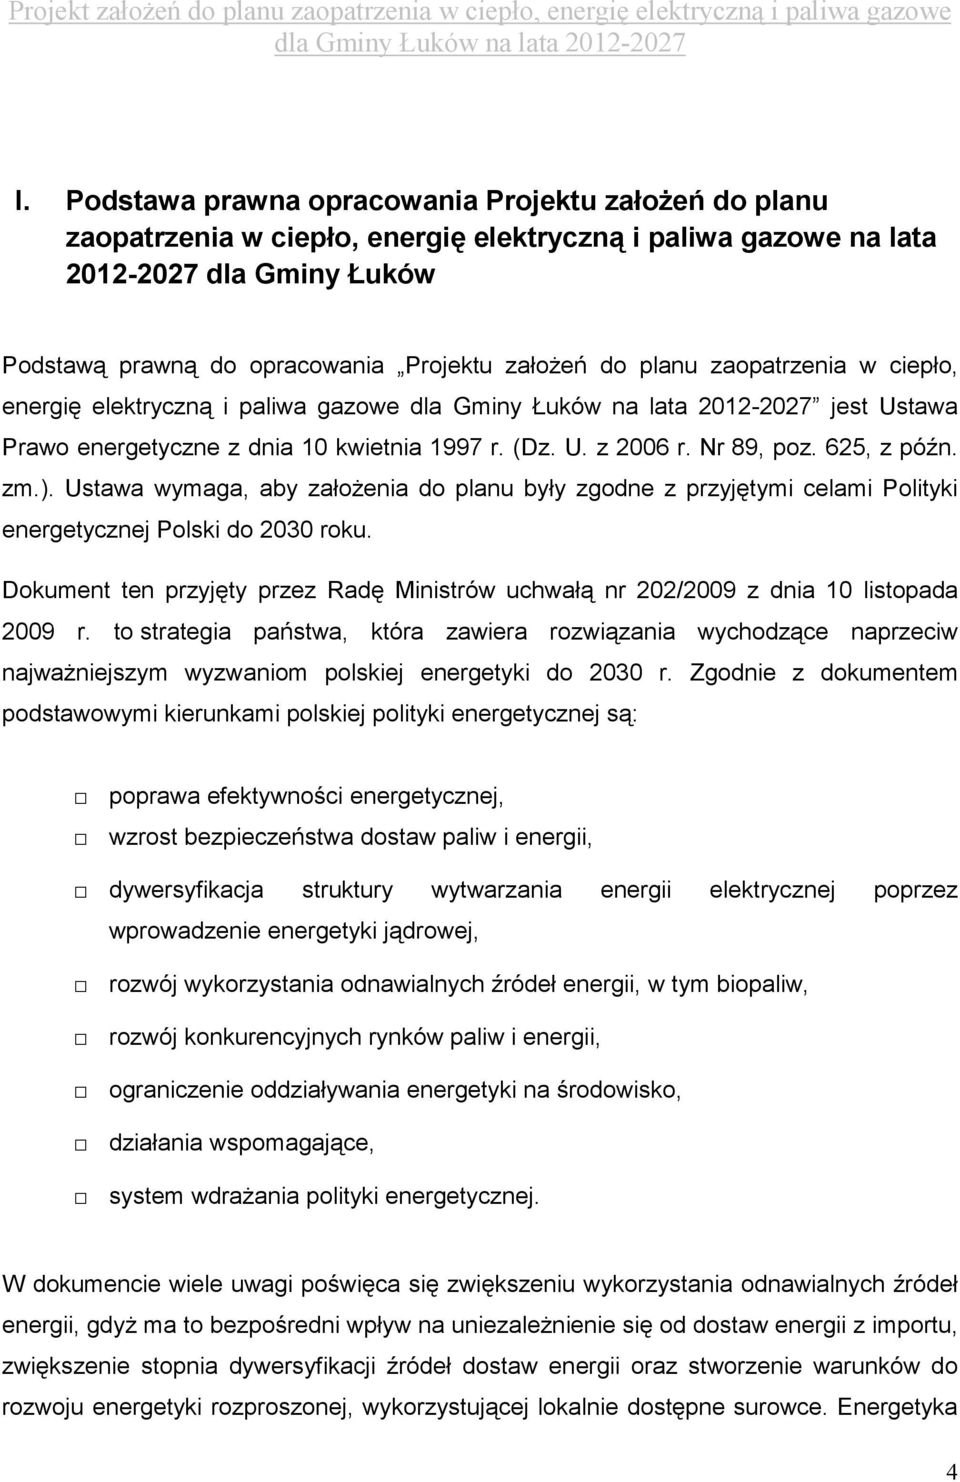 Ustawa wymaga, aby załoŝenia do planu były zgodne z przyjętymi celami Polityki energetycznej Polski do 2030 roku.